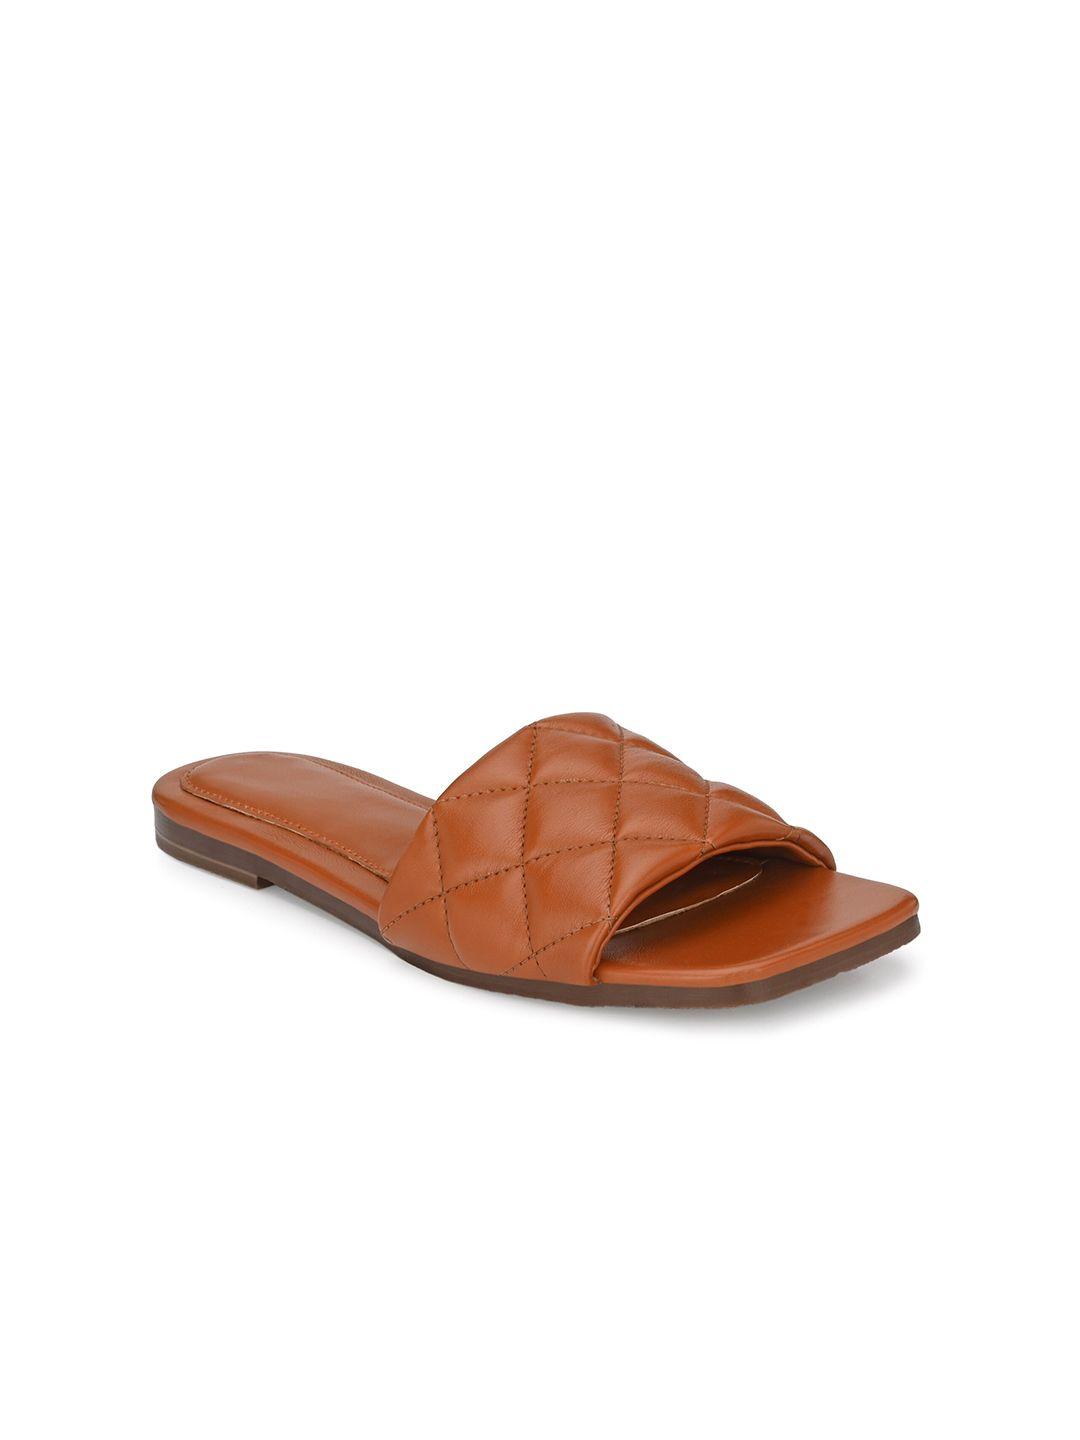 delize women tan brown flats sandals